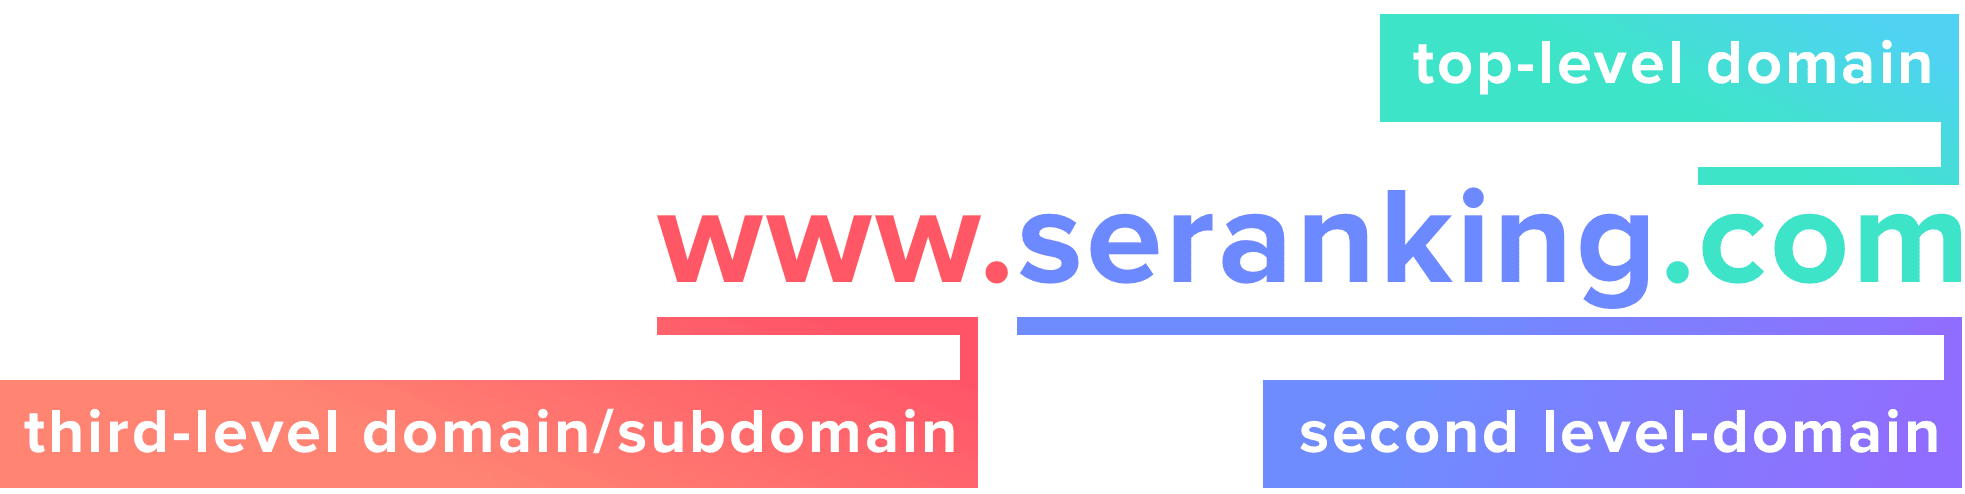 www-seranking-com-domeinstructuur